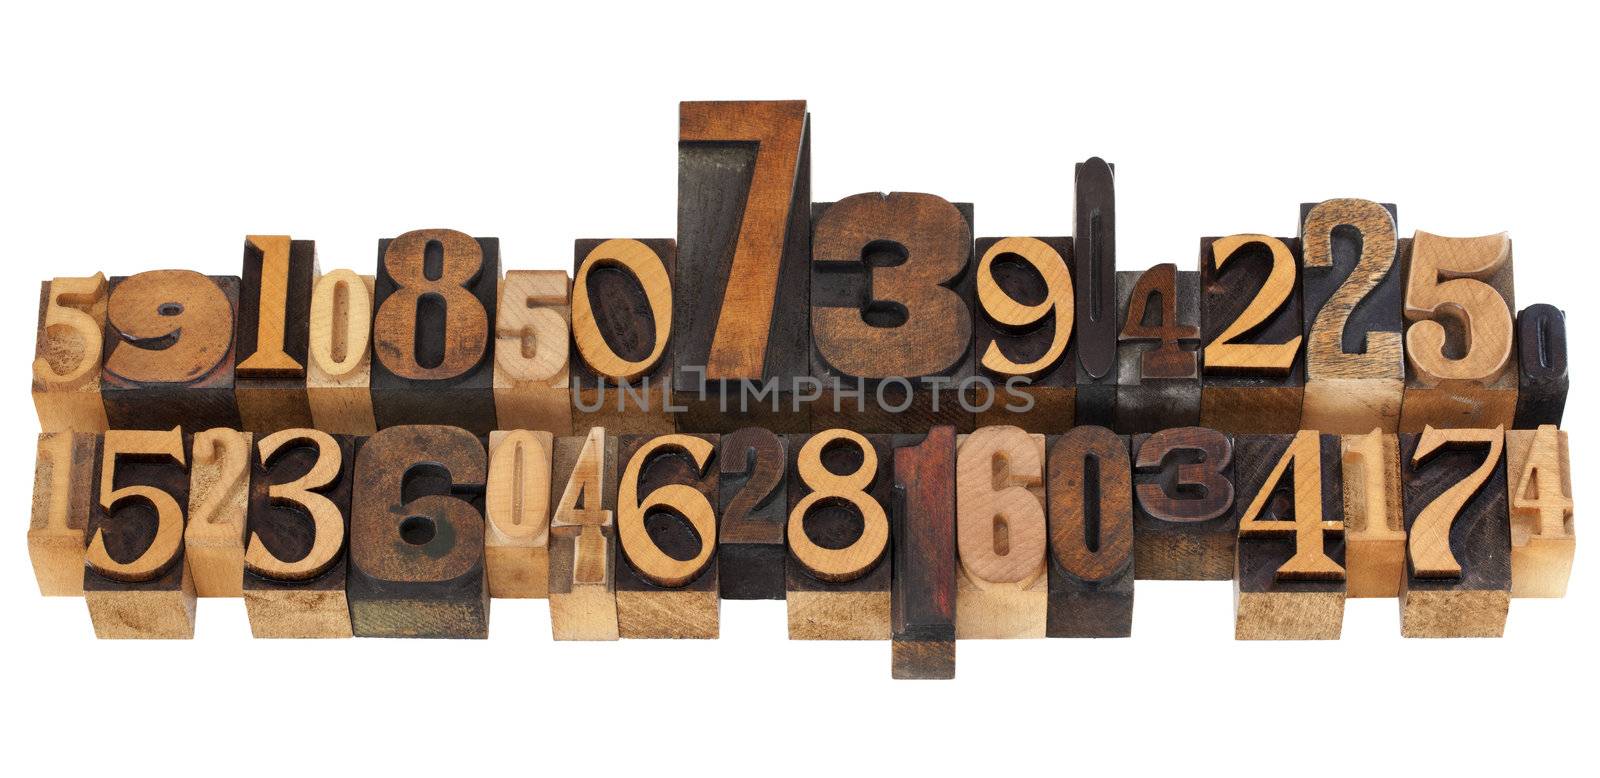 random numbers in letterpress type by PixelsAway